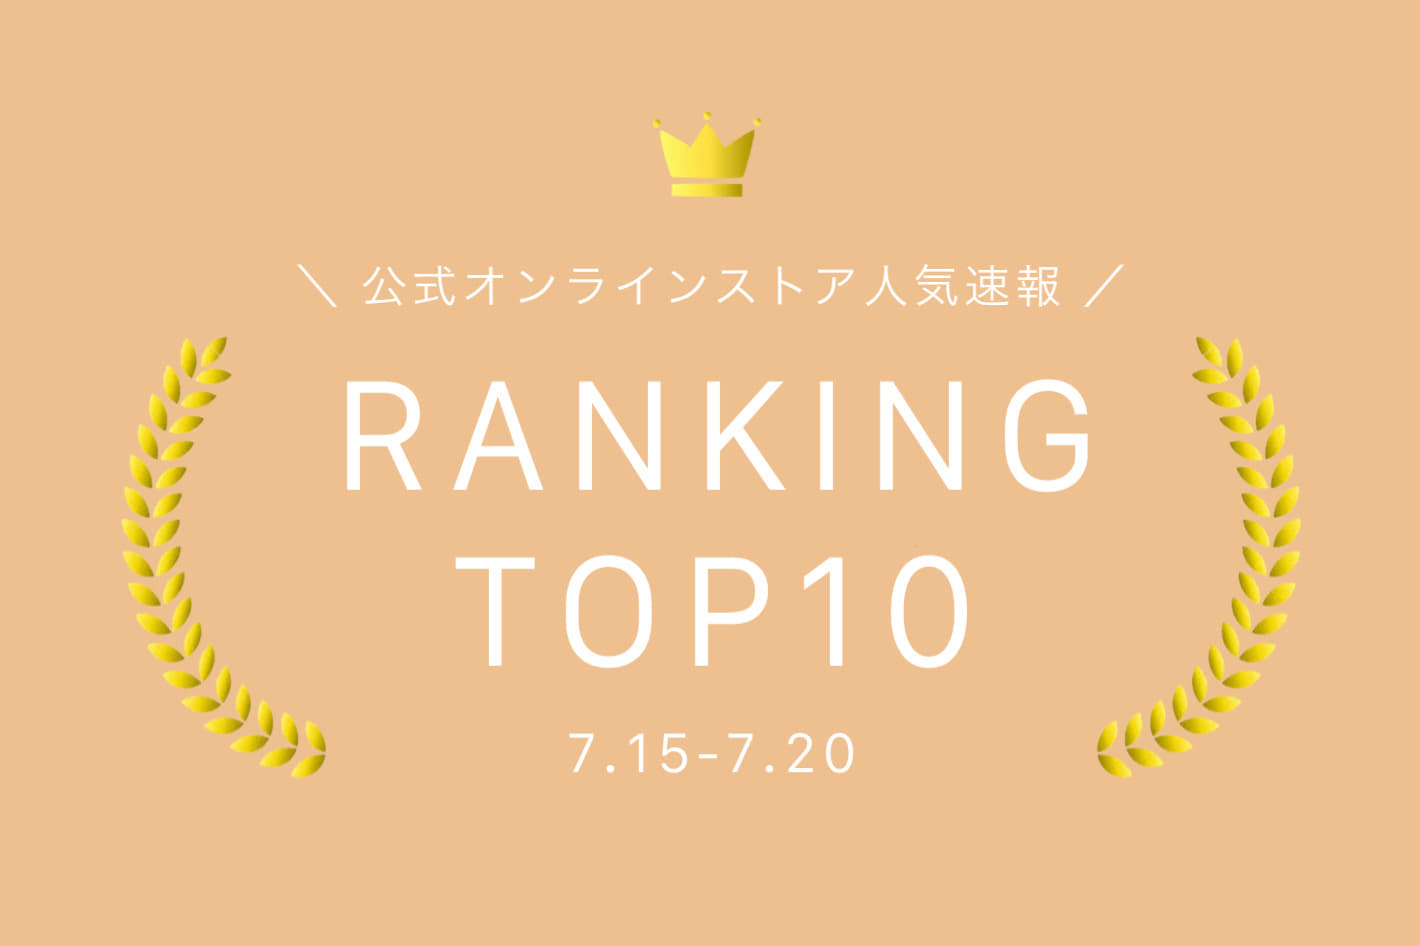 Kastane 【7.15-7.20】WEEKLY RANKING TOP10